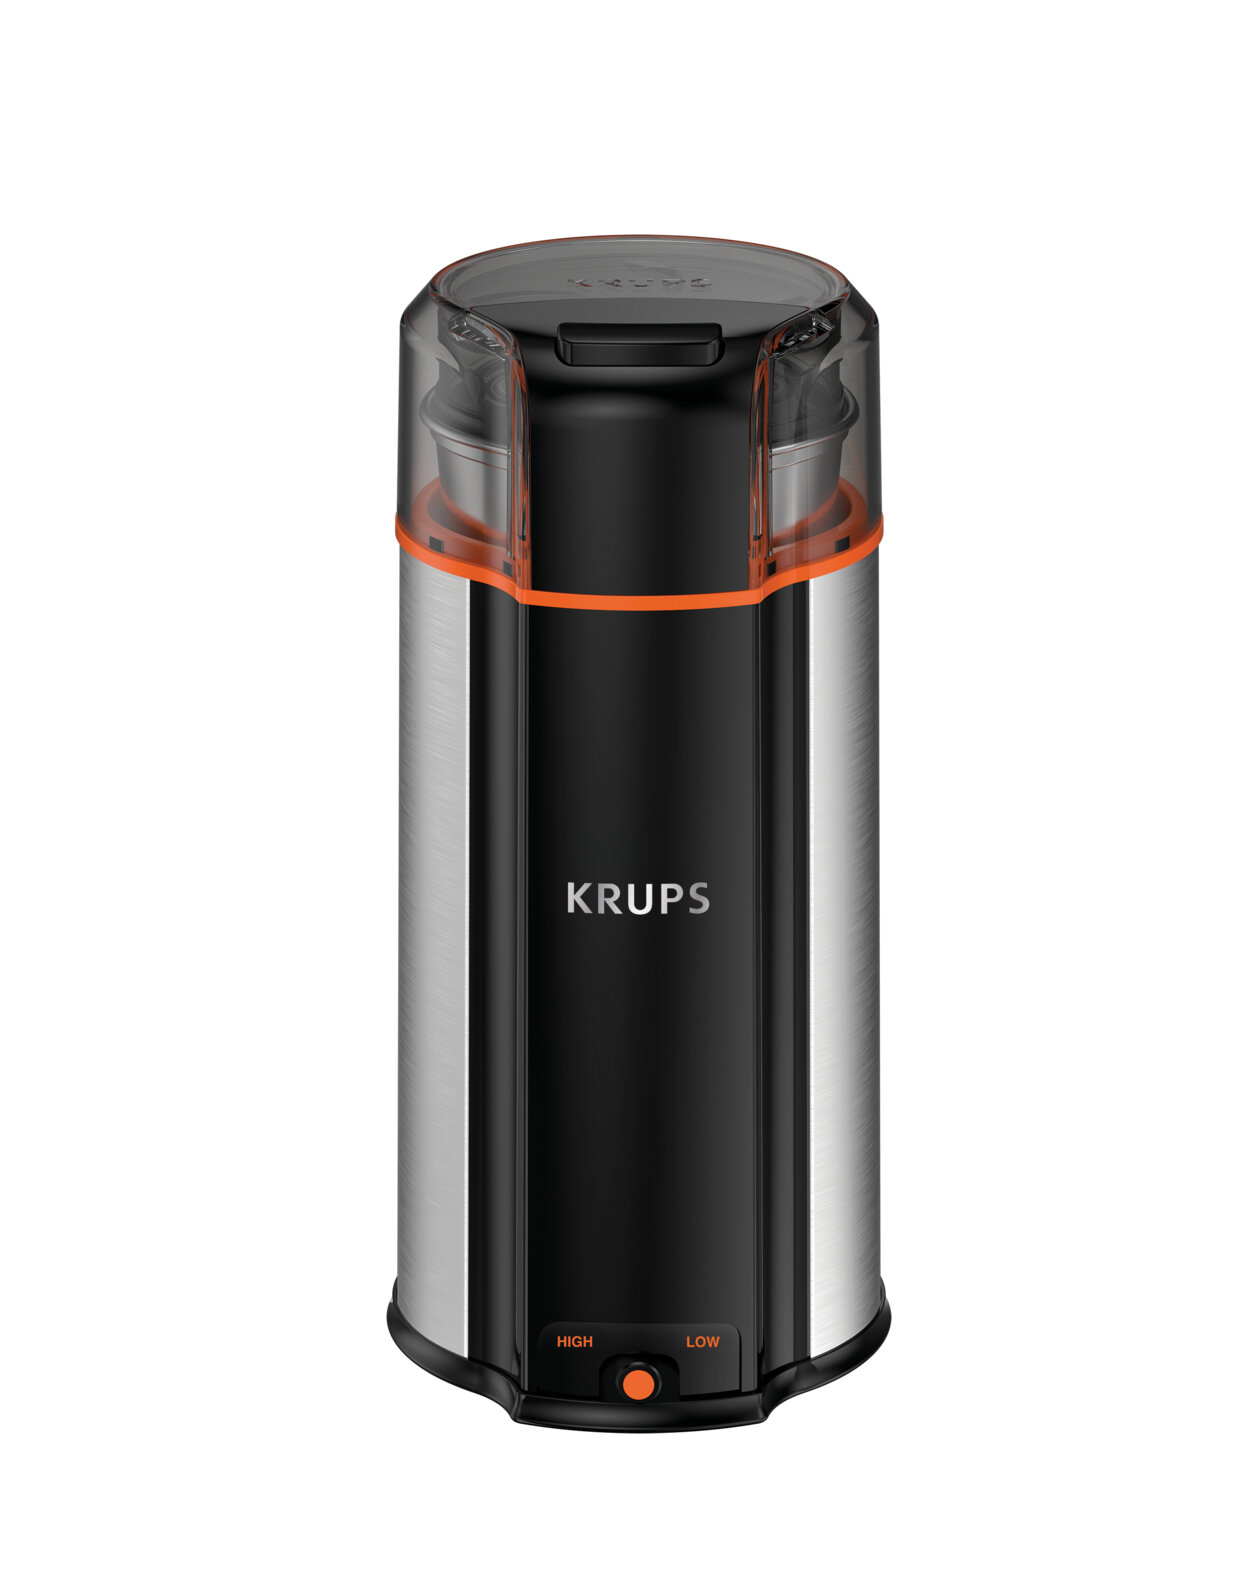  Krups Black Stainless Steel 3 oz. Coffee Grinder: Home